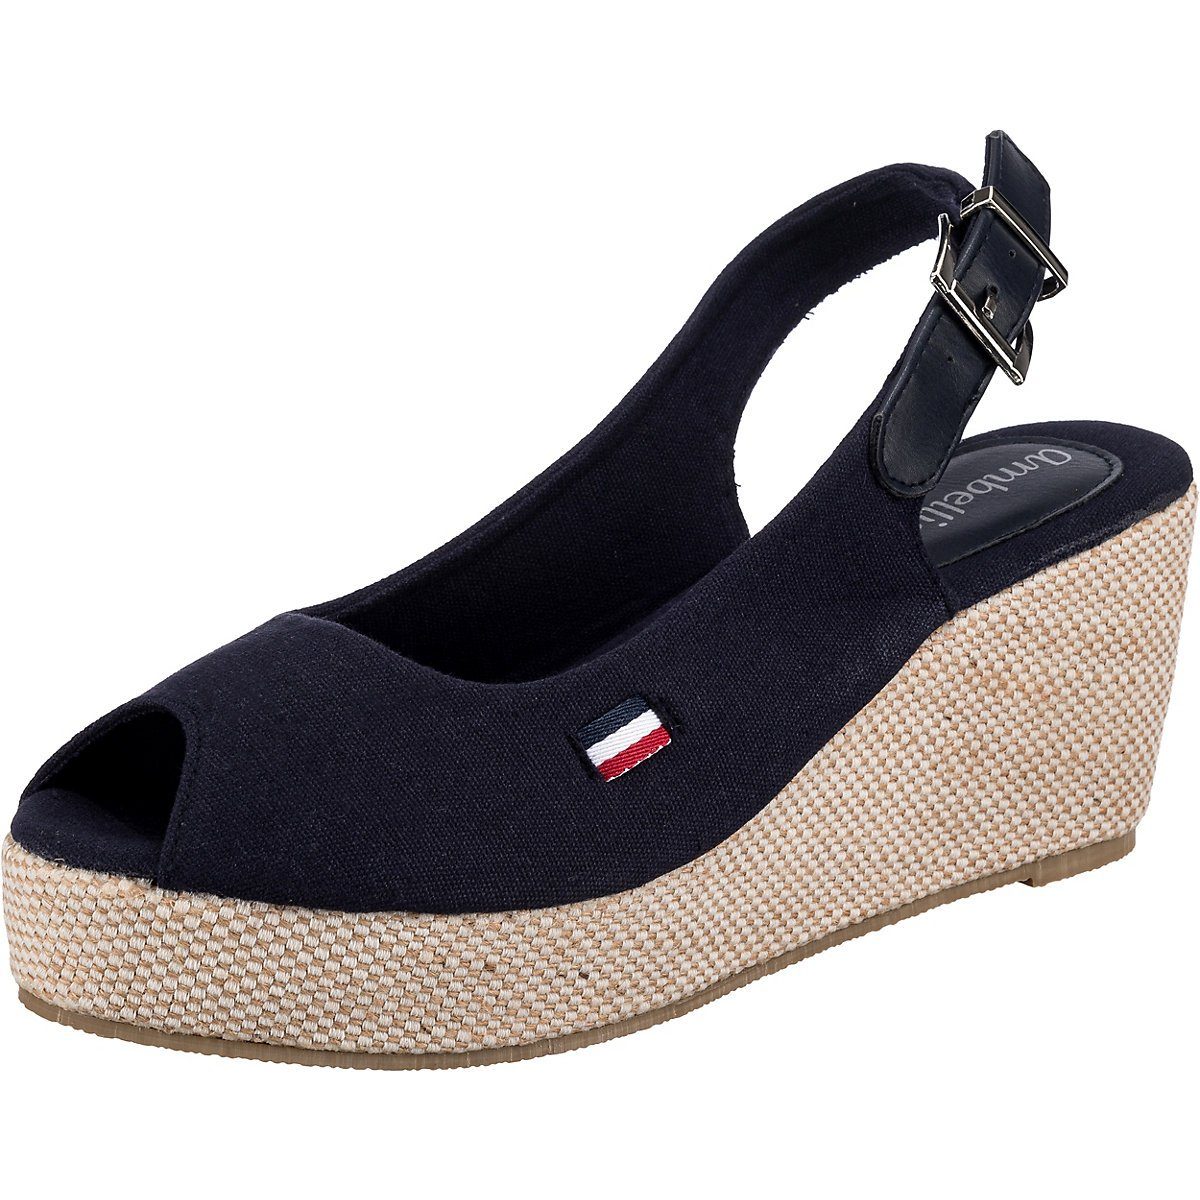 Schwarze Gabor Keilabsatz Sandalen für Damen kaufen | OTTO